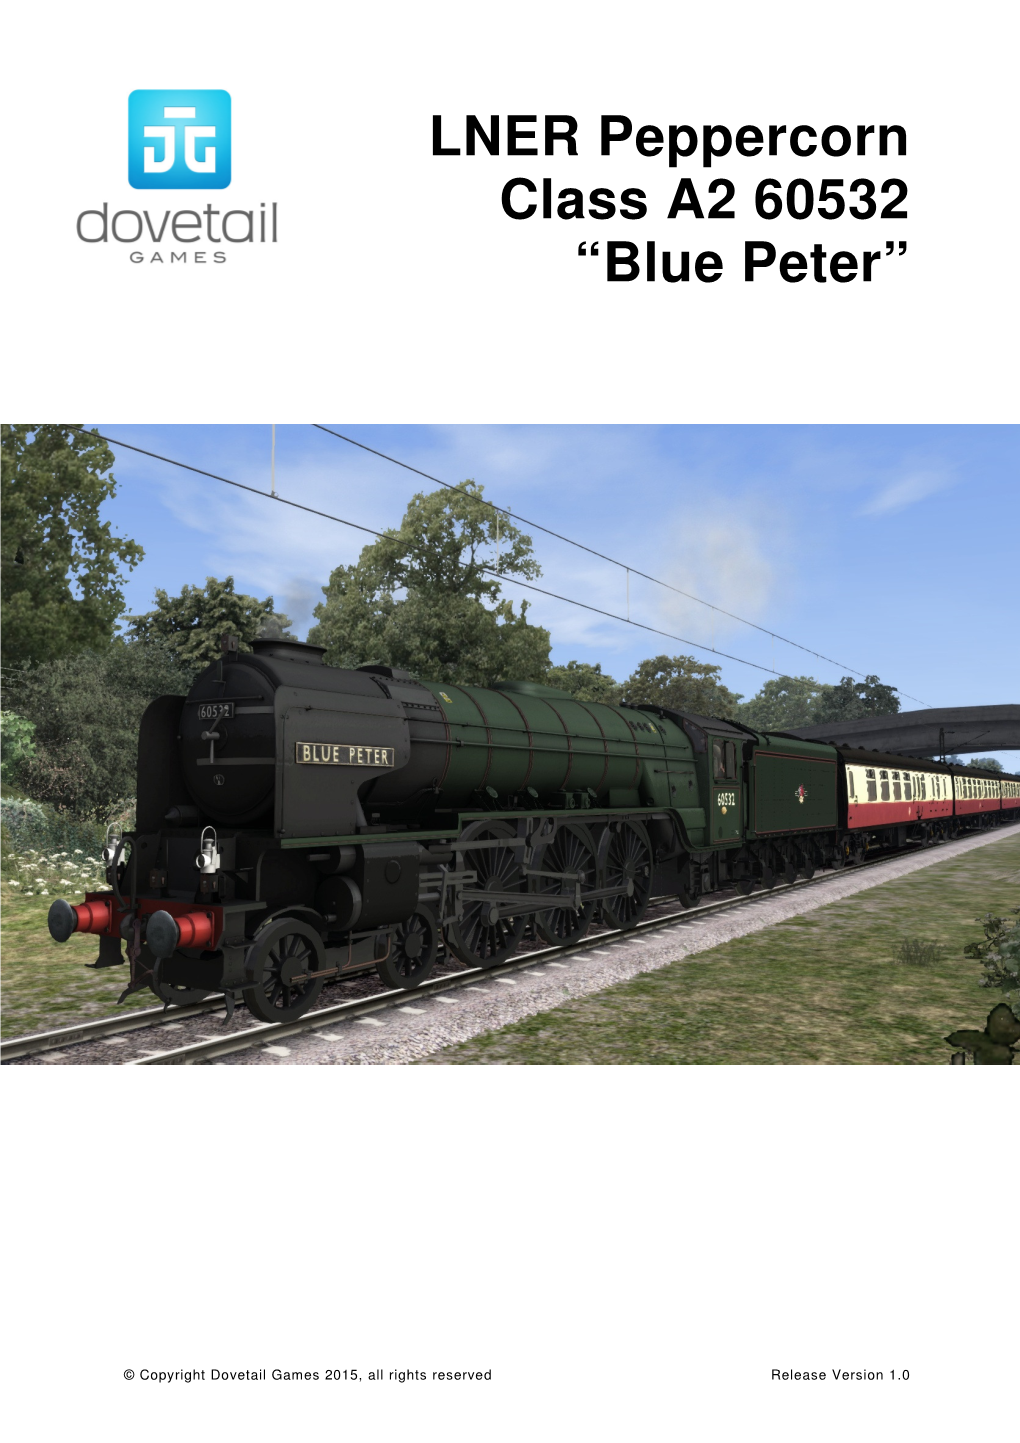 LNER Peppercorn Class A2 60532 “Blue Peter”